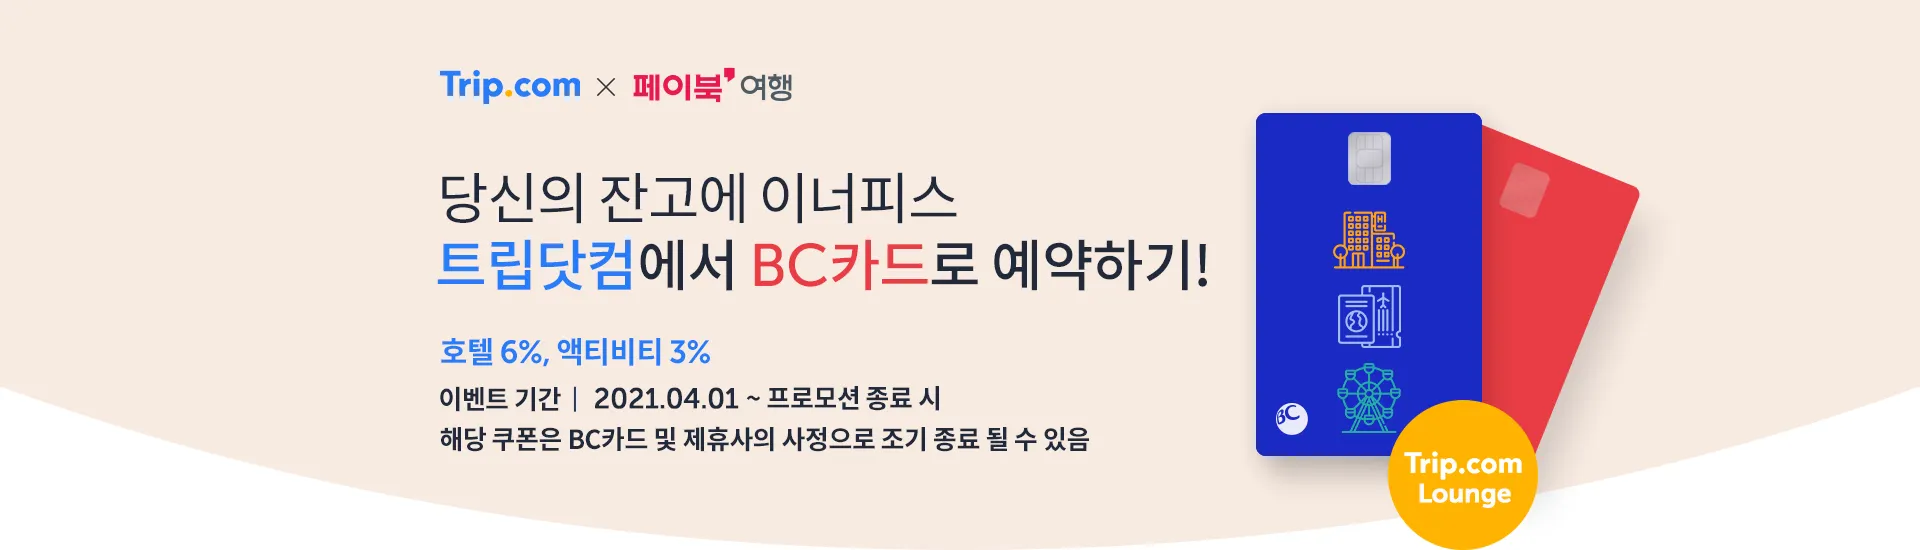 트립닷컴 BC카드 회원 전용